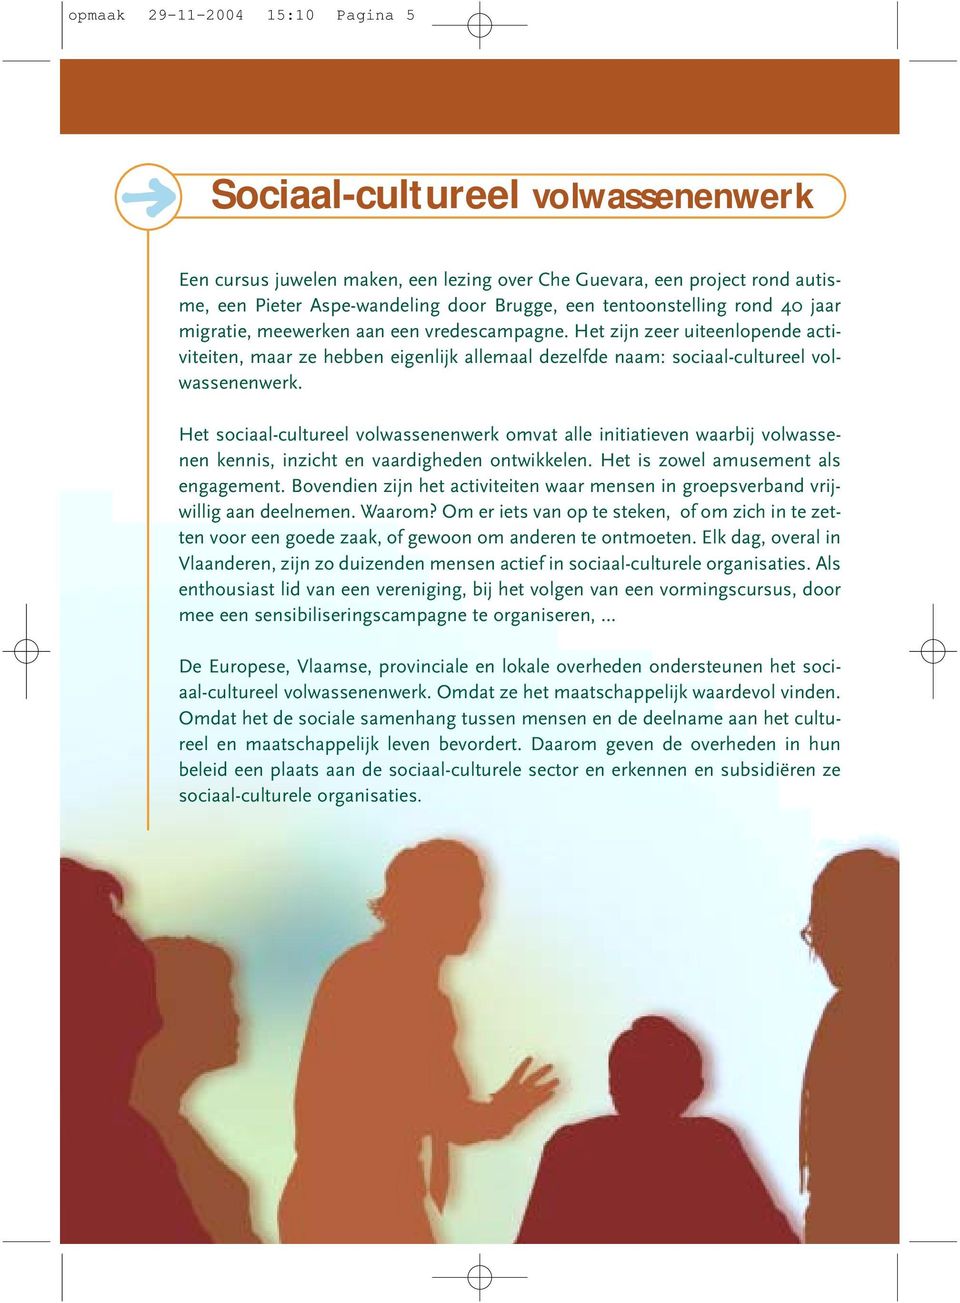 Het sociaal-cultureel volwassenenwerk omvat alle initiatieven waarbij volwassenen kennis, inzicht en vaardigheden ontwikkelen. Het is zowel amusement als engagement.